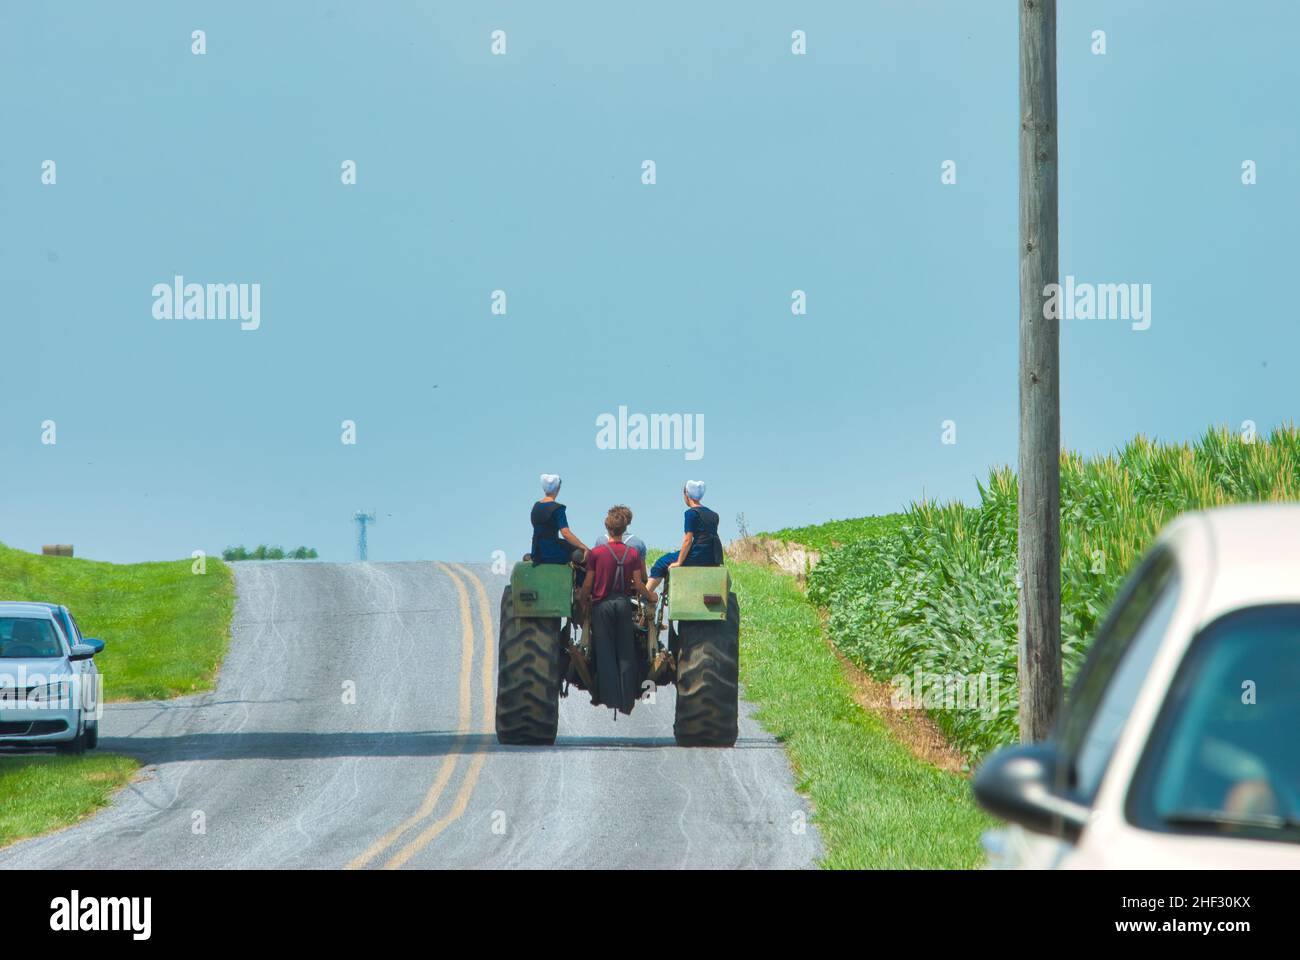 Jugendliche mit Amish Boy und Girl, die an einem Sommertag auf einem alten Traktor auf einem Ackerland reiten Stockfoto